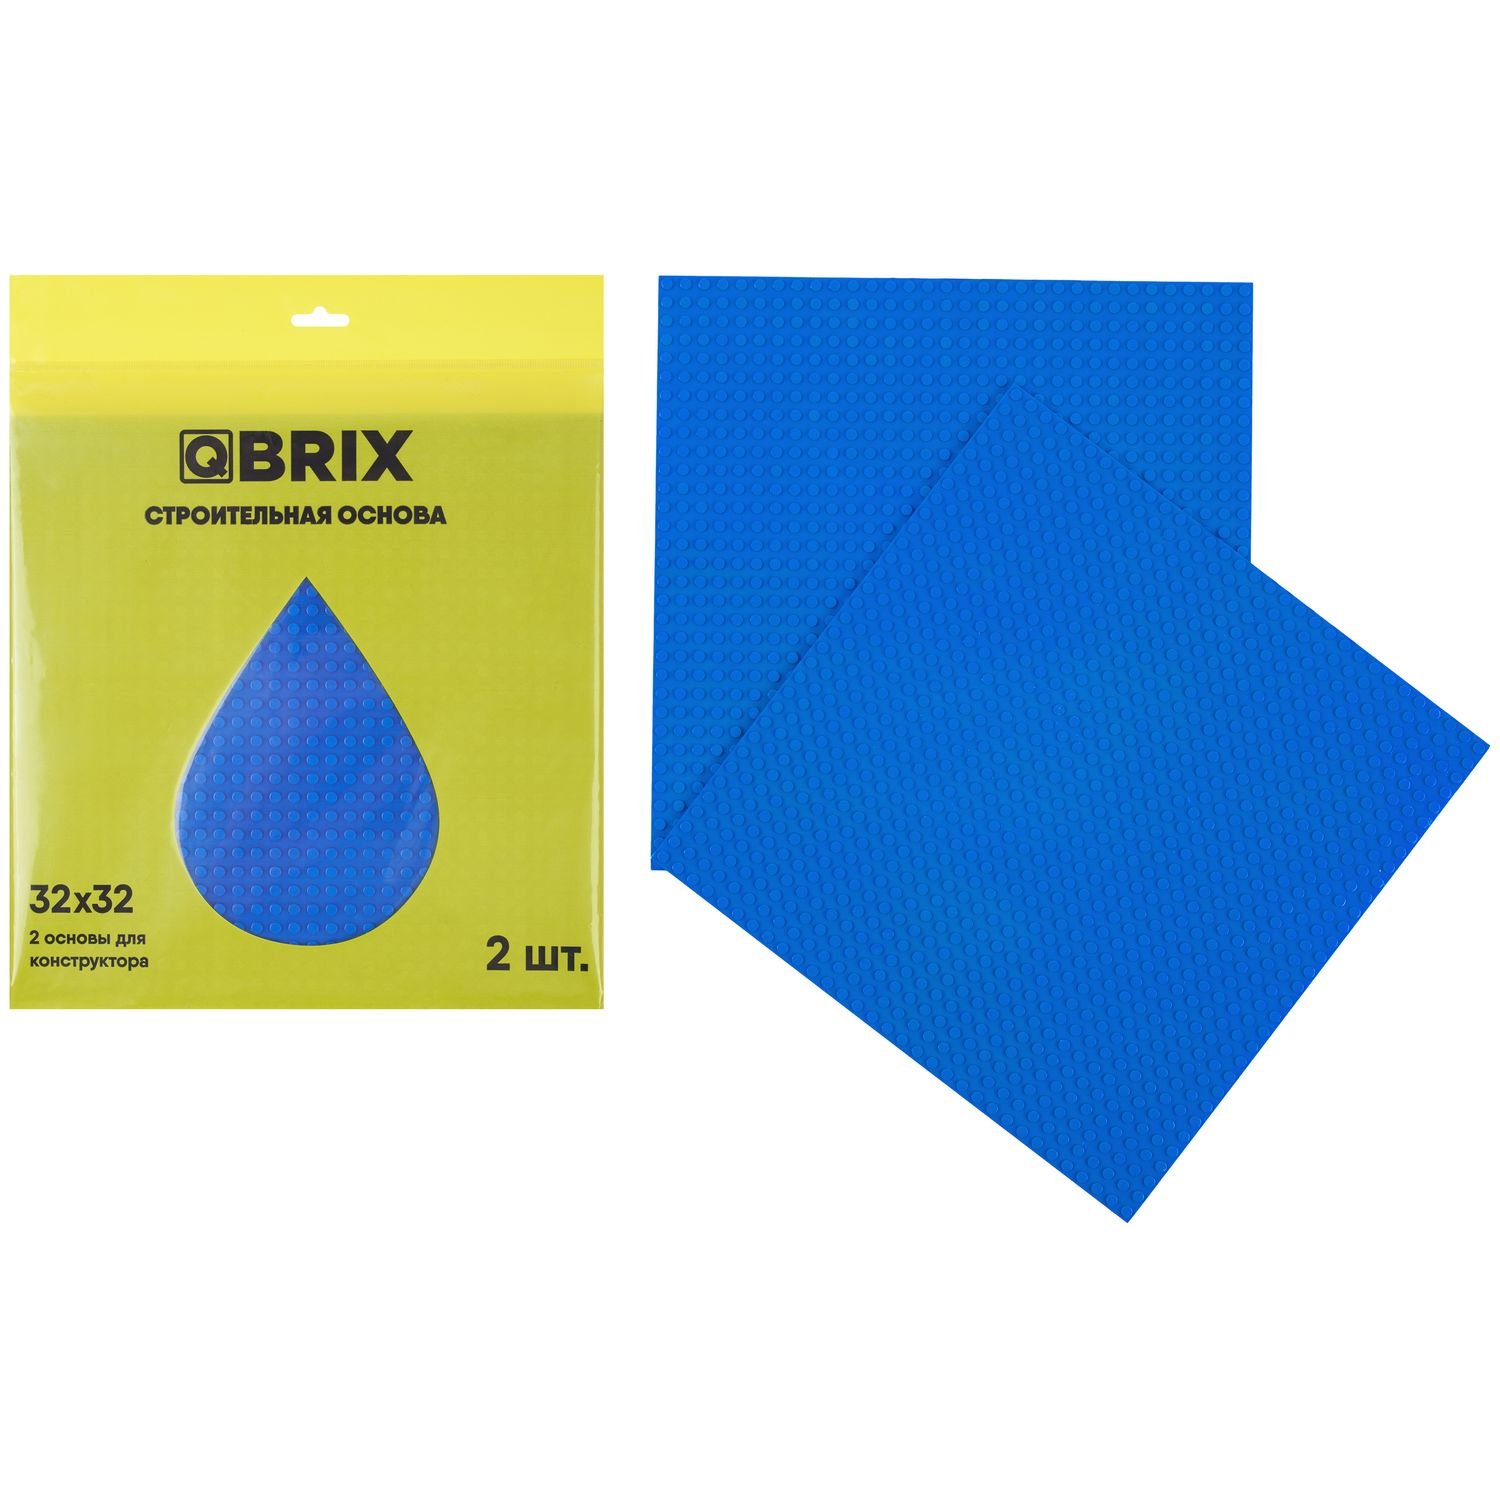 Строительная пластина QBRIX (набор из 2-х штук), цвет: синий QBRIX10002